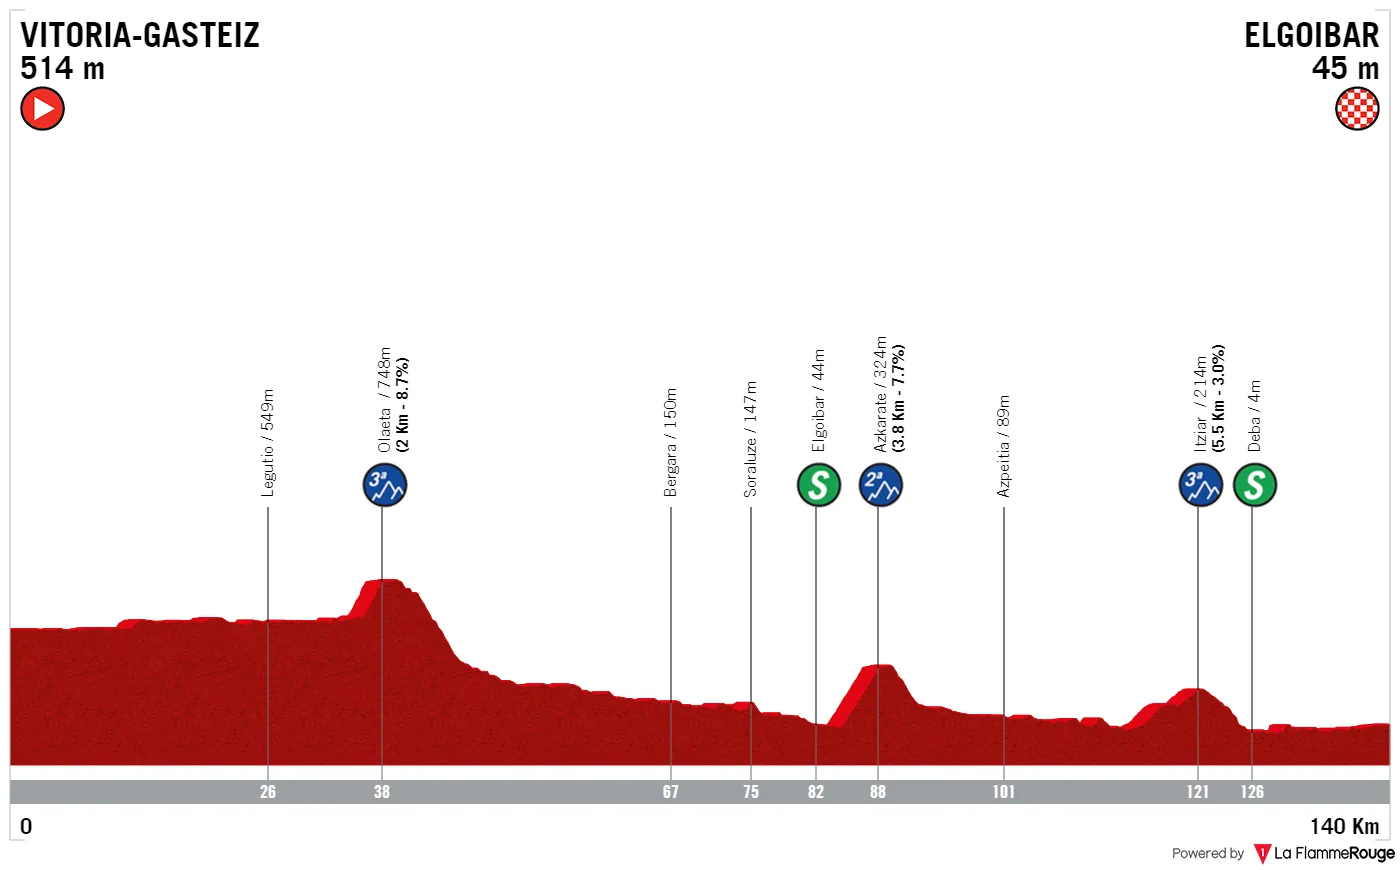 Etappe 1: Vitoria-Fasteiz - Elgoibar, 140,2 Kilometer schematisches Profil<br>